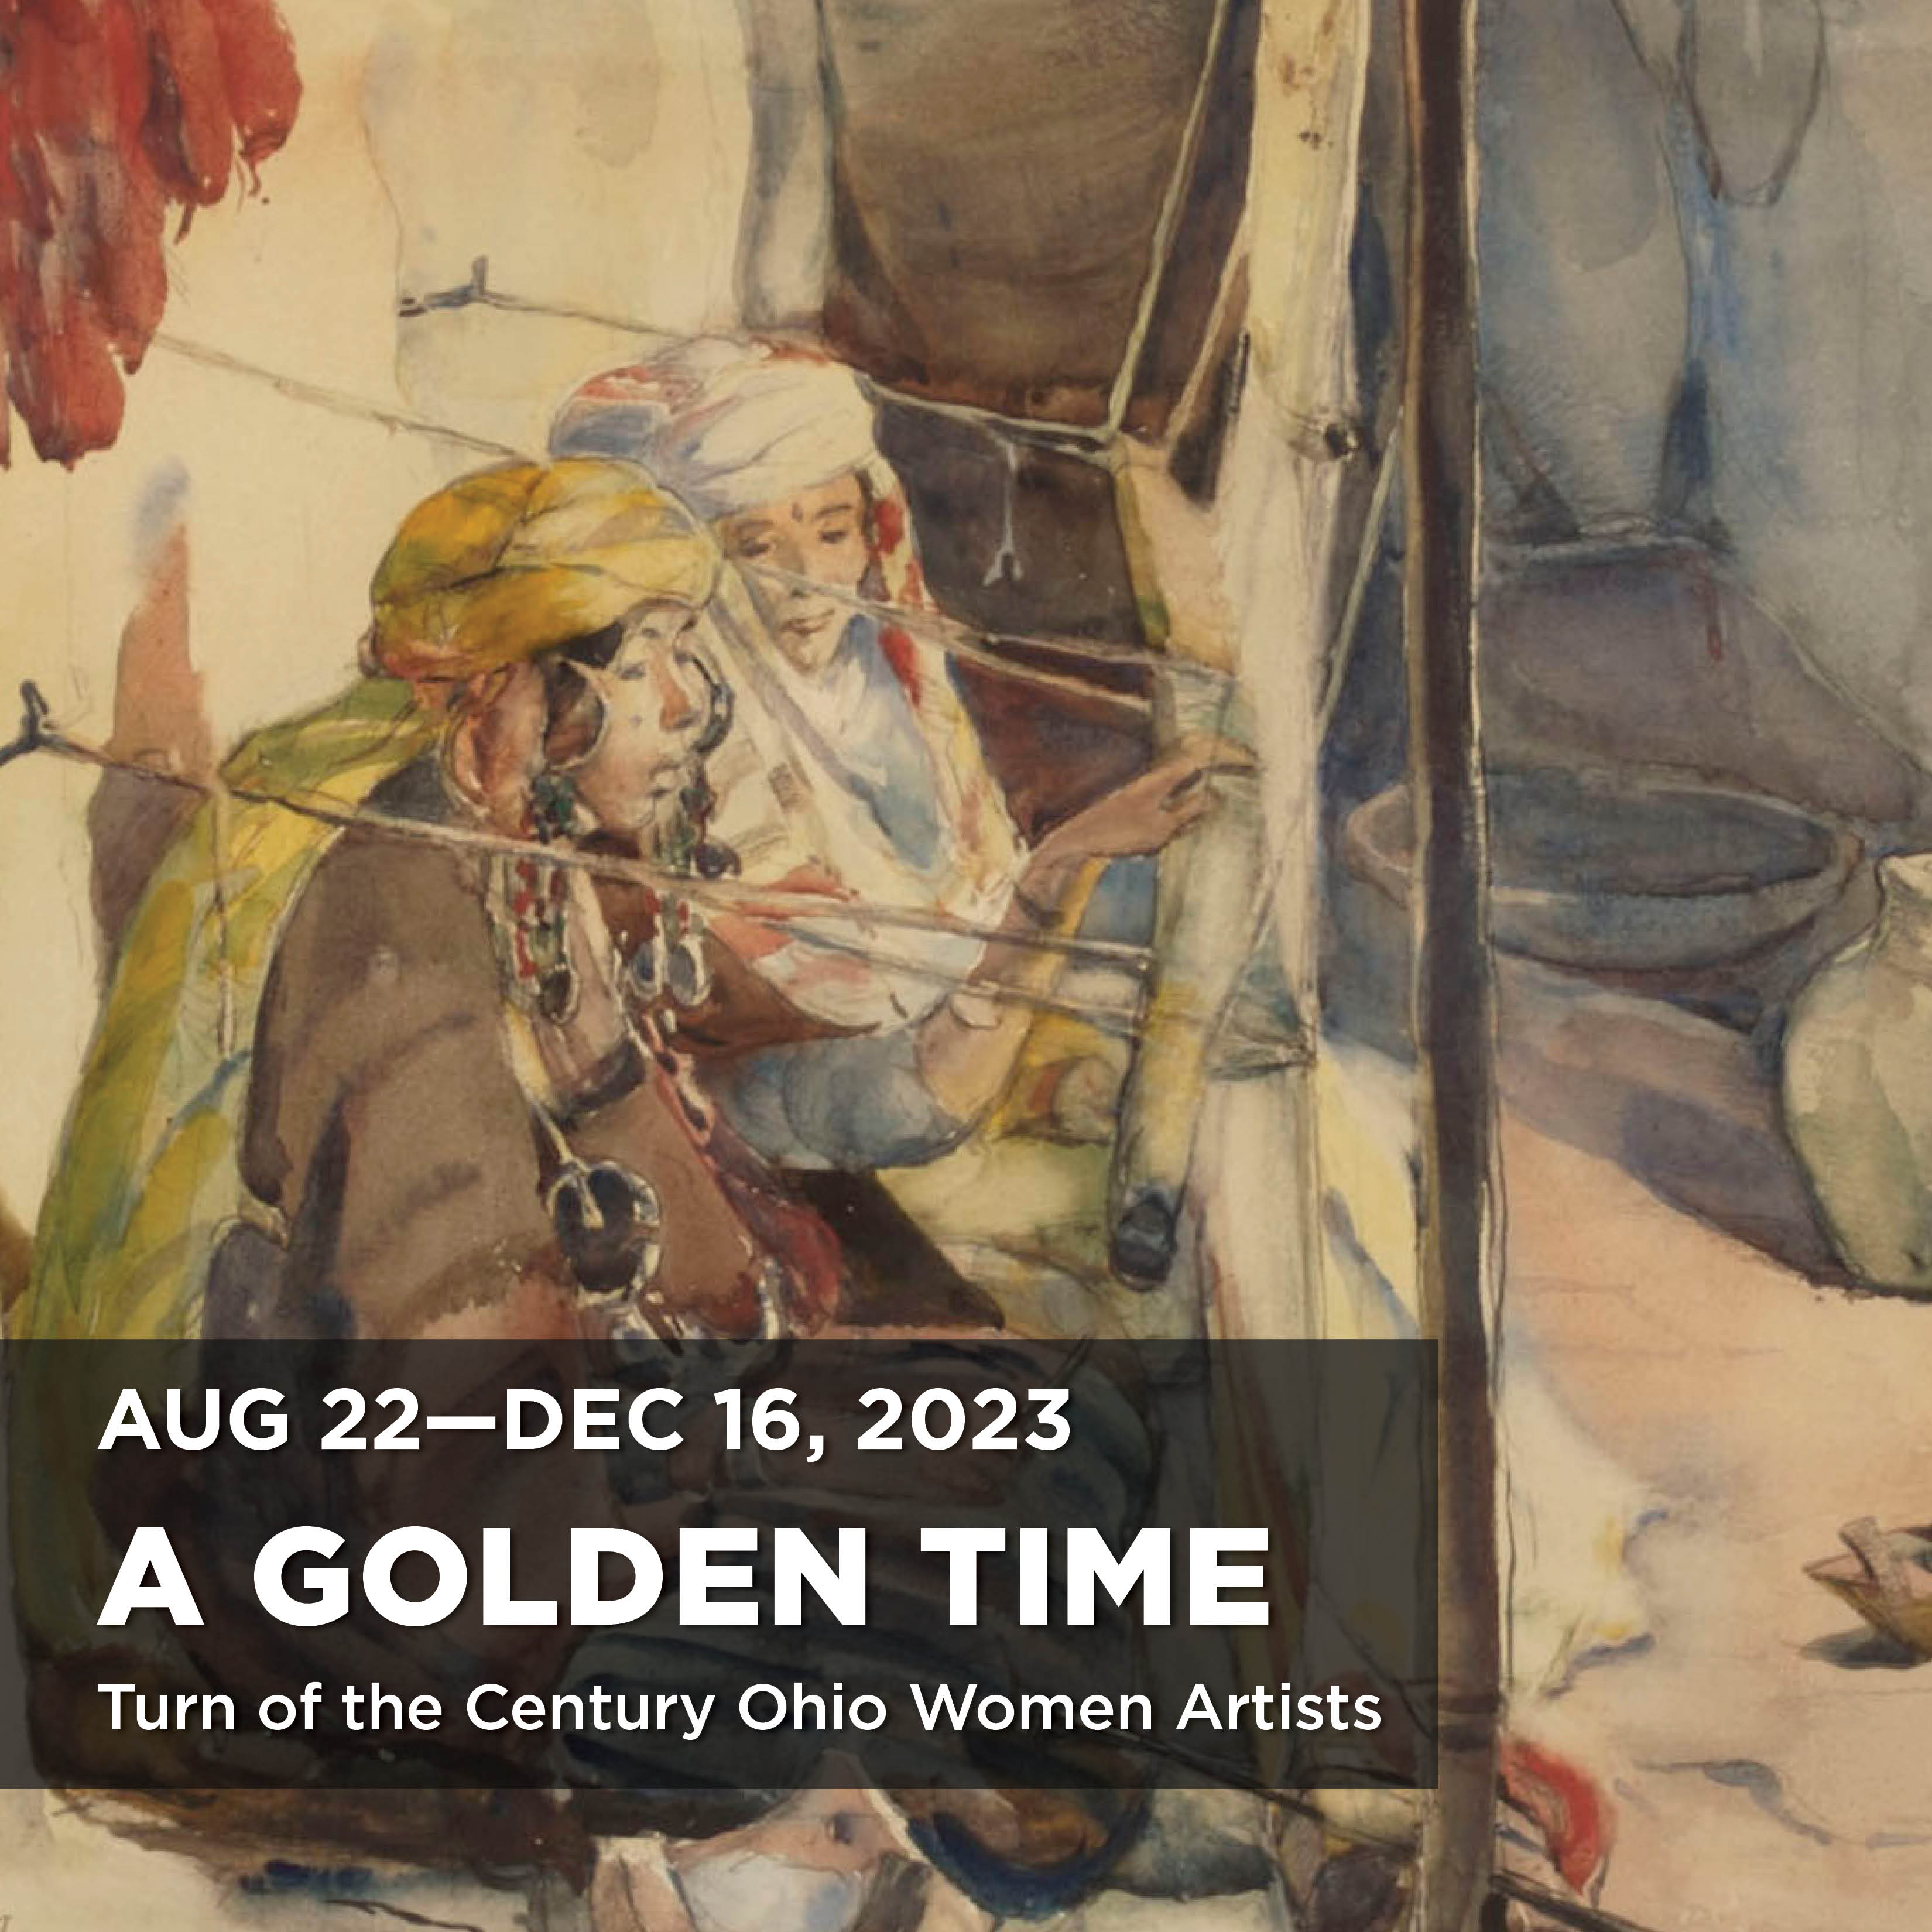 A Golden Time Exhibition title open Aug 22-Dec 16